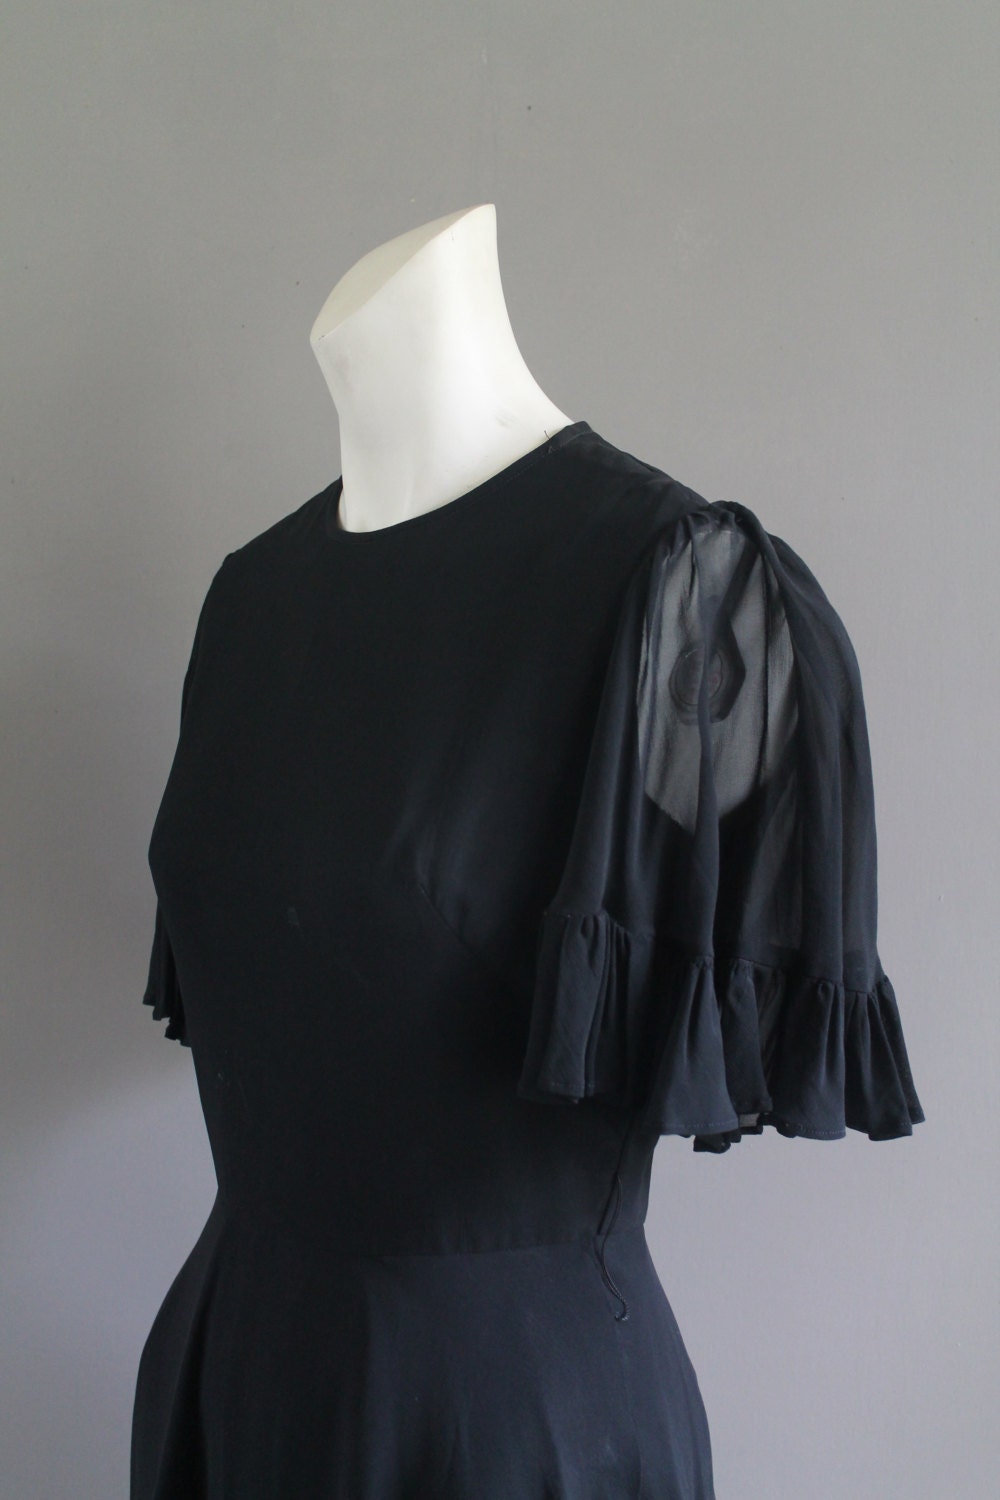 black shirtwaist dress